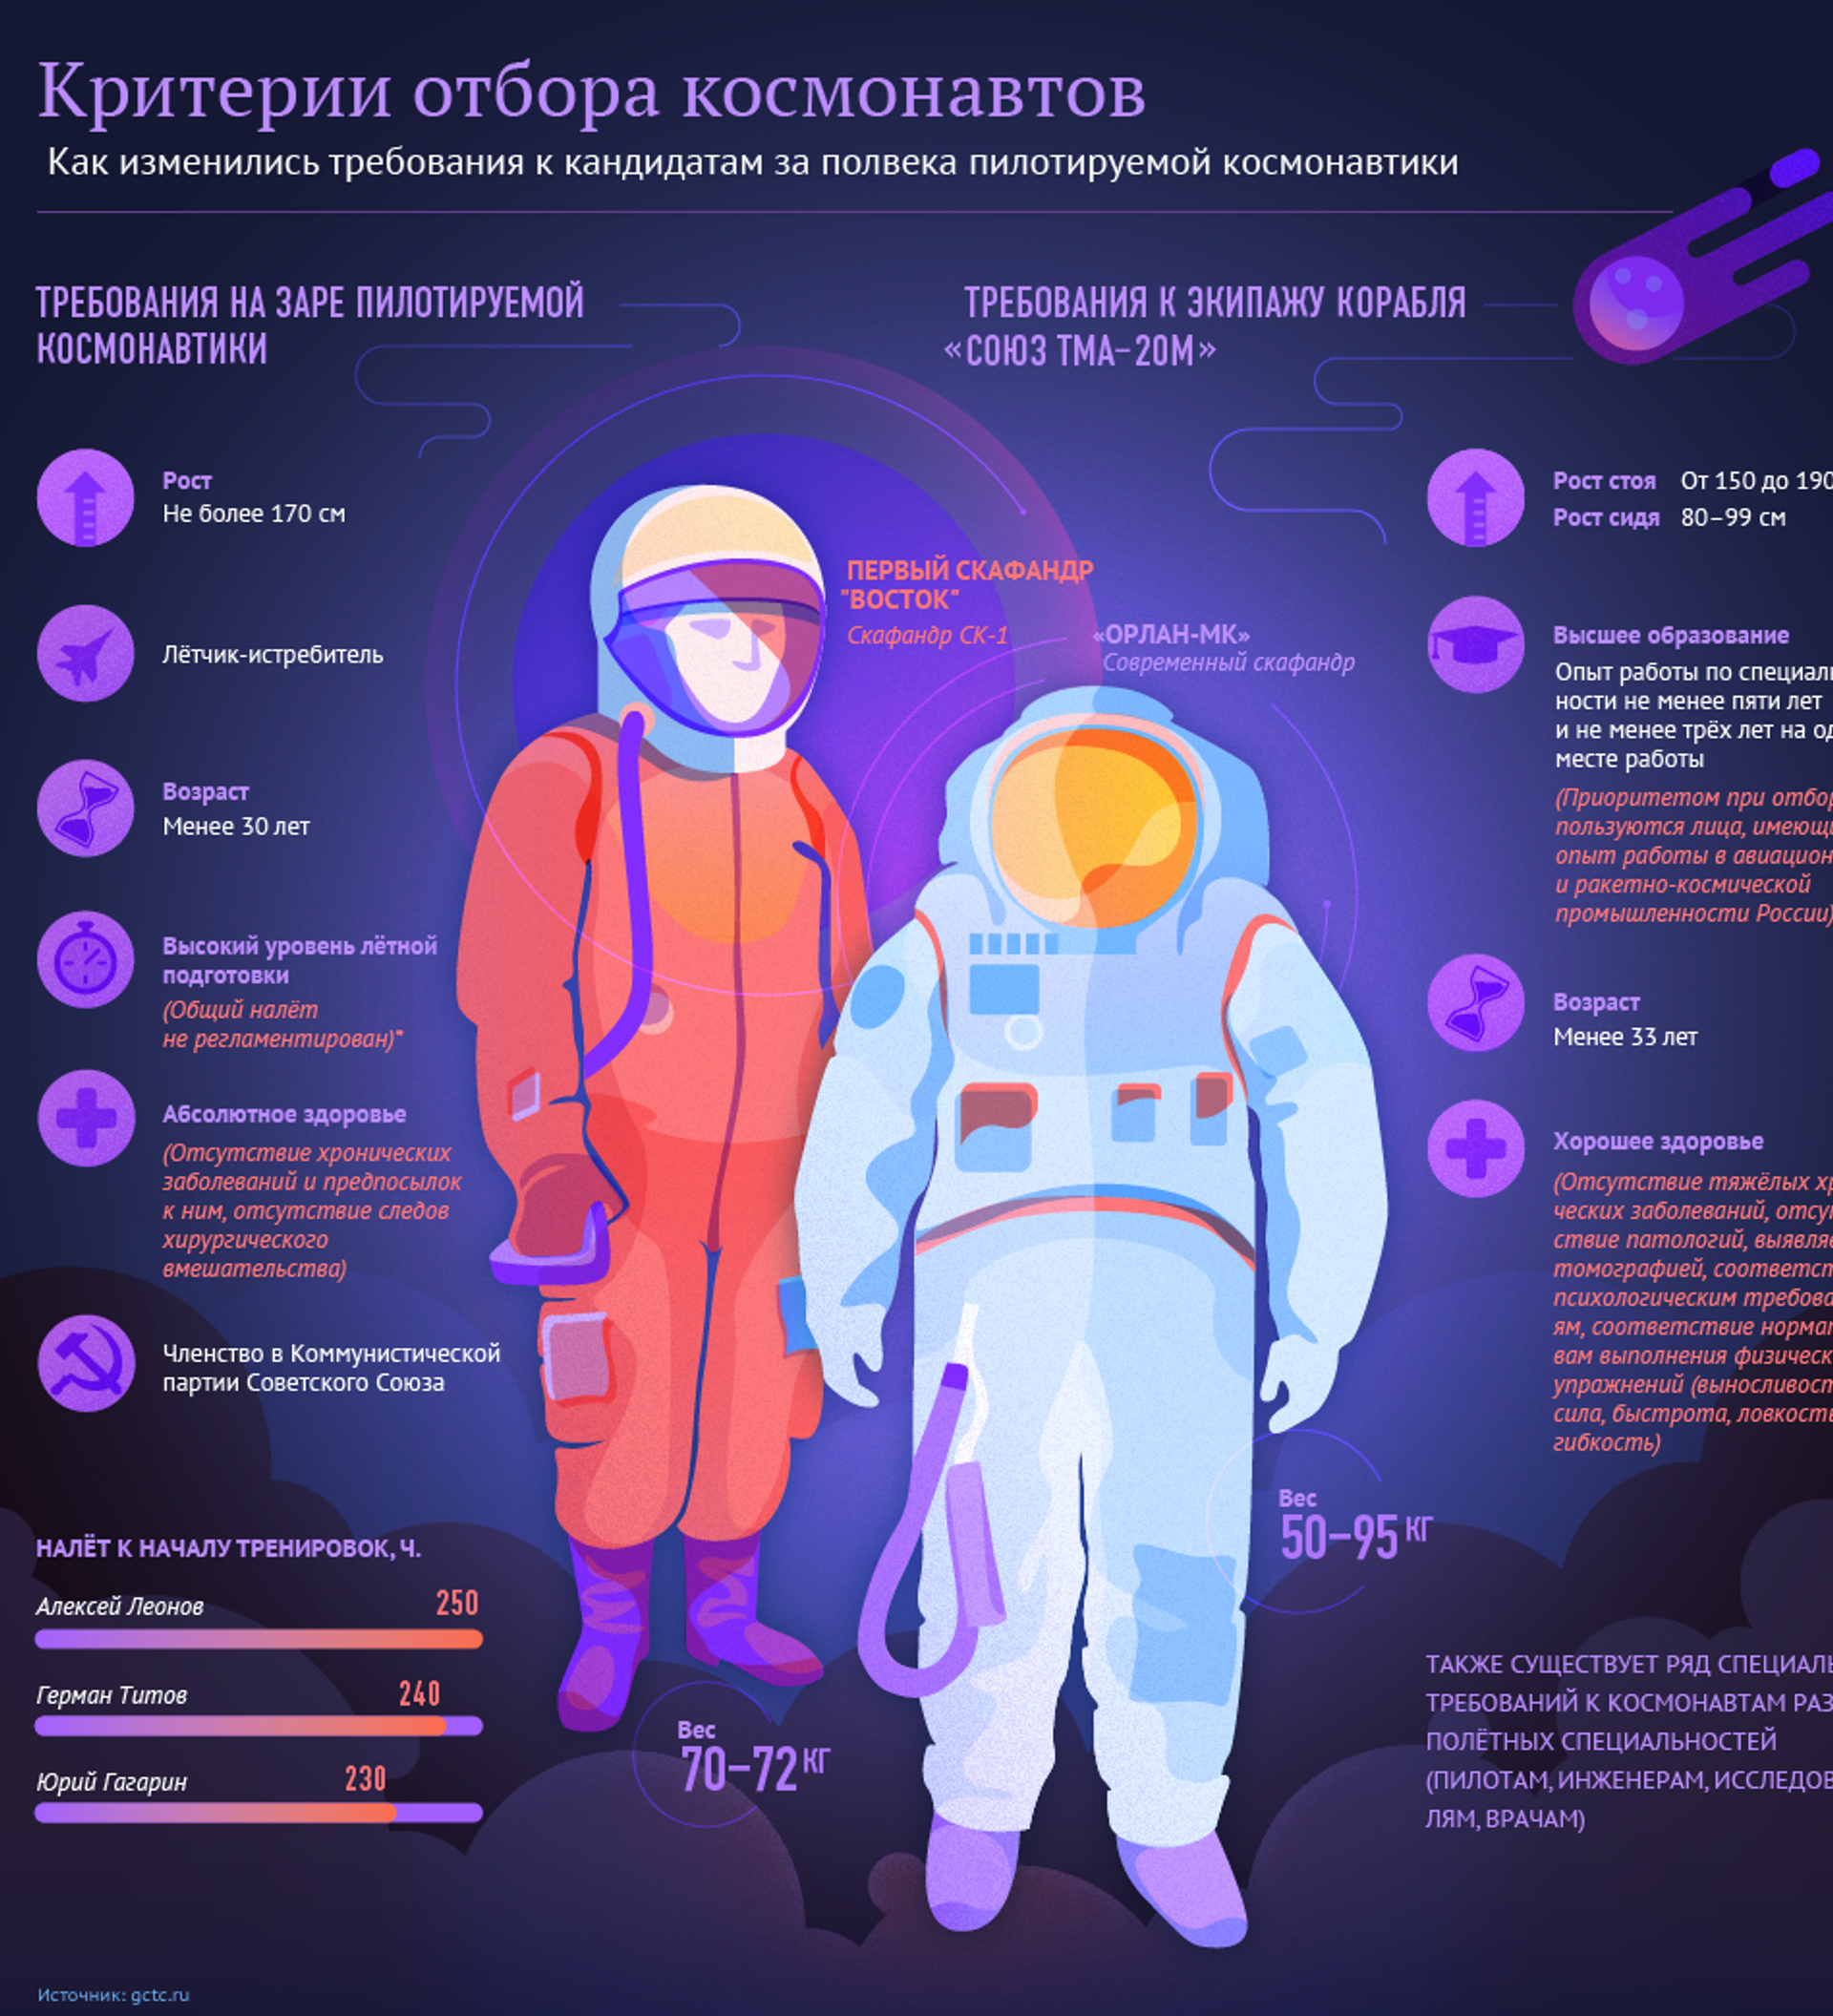 Рост человека в космосе. Требования к космонавтам. Критерии отбора Космонавтов. Инфографика космос детям. Освоение космоса инфографика.